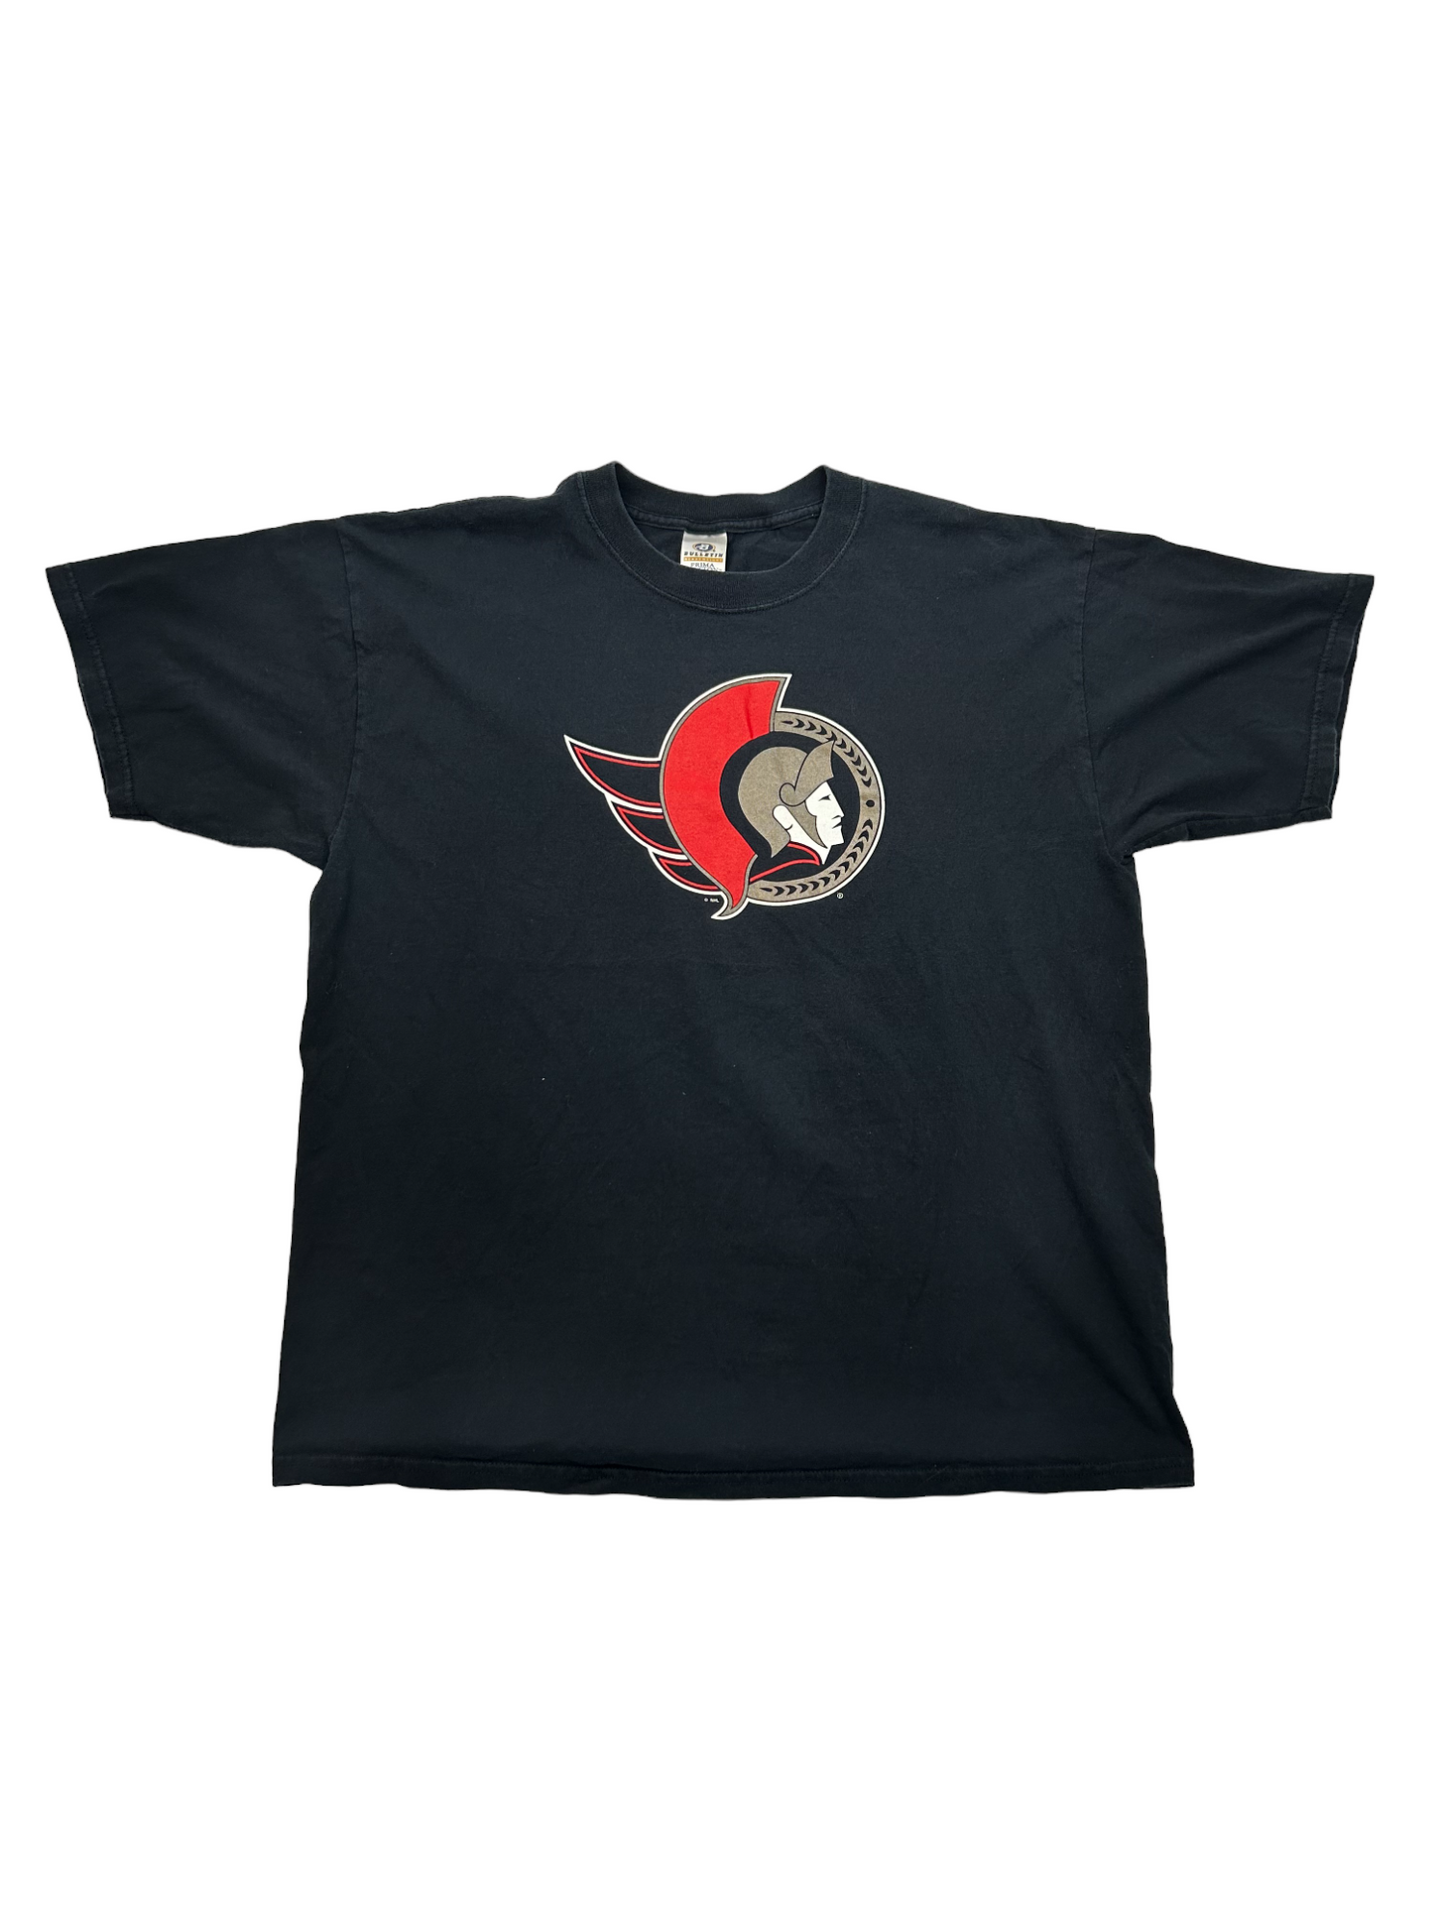 Ottawa Senators T-Shirt